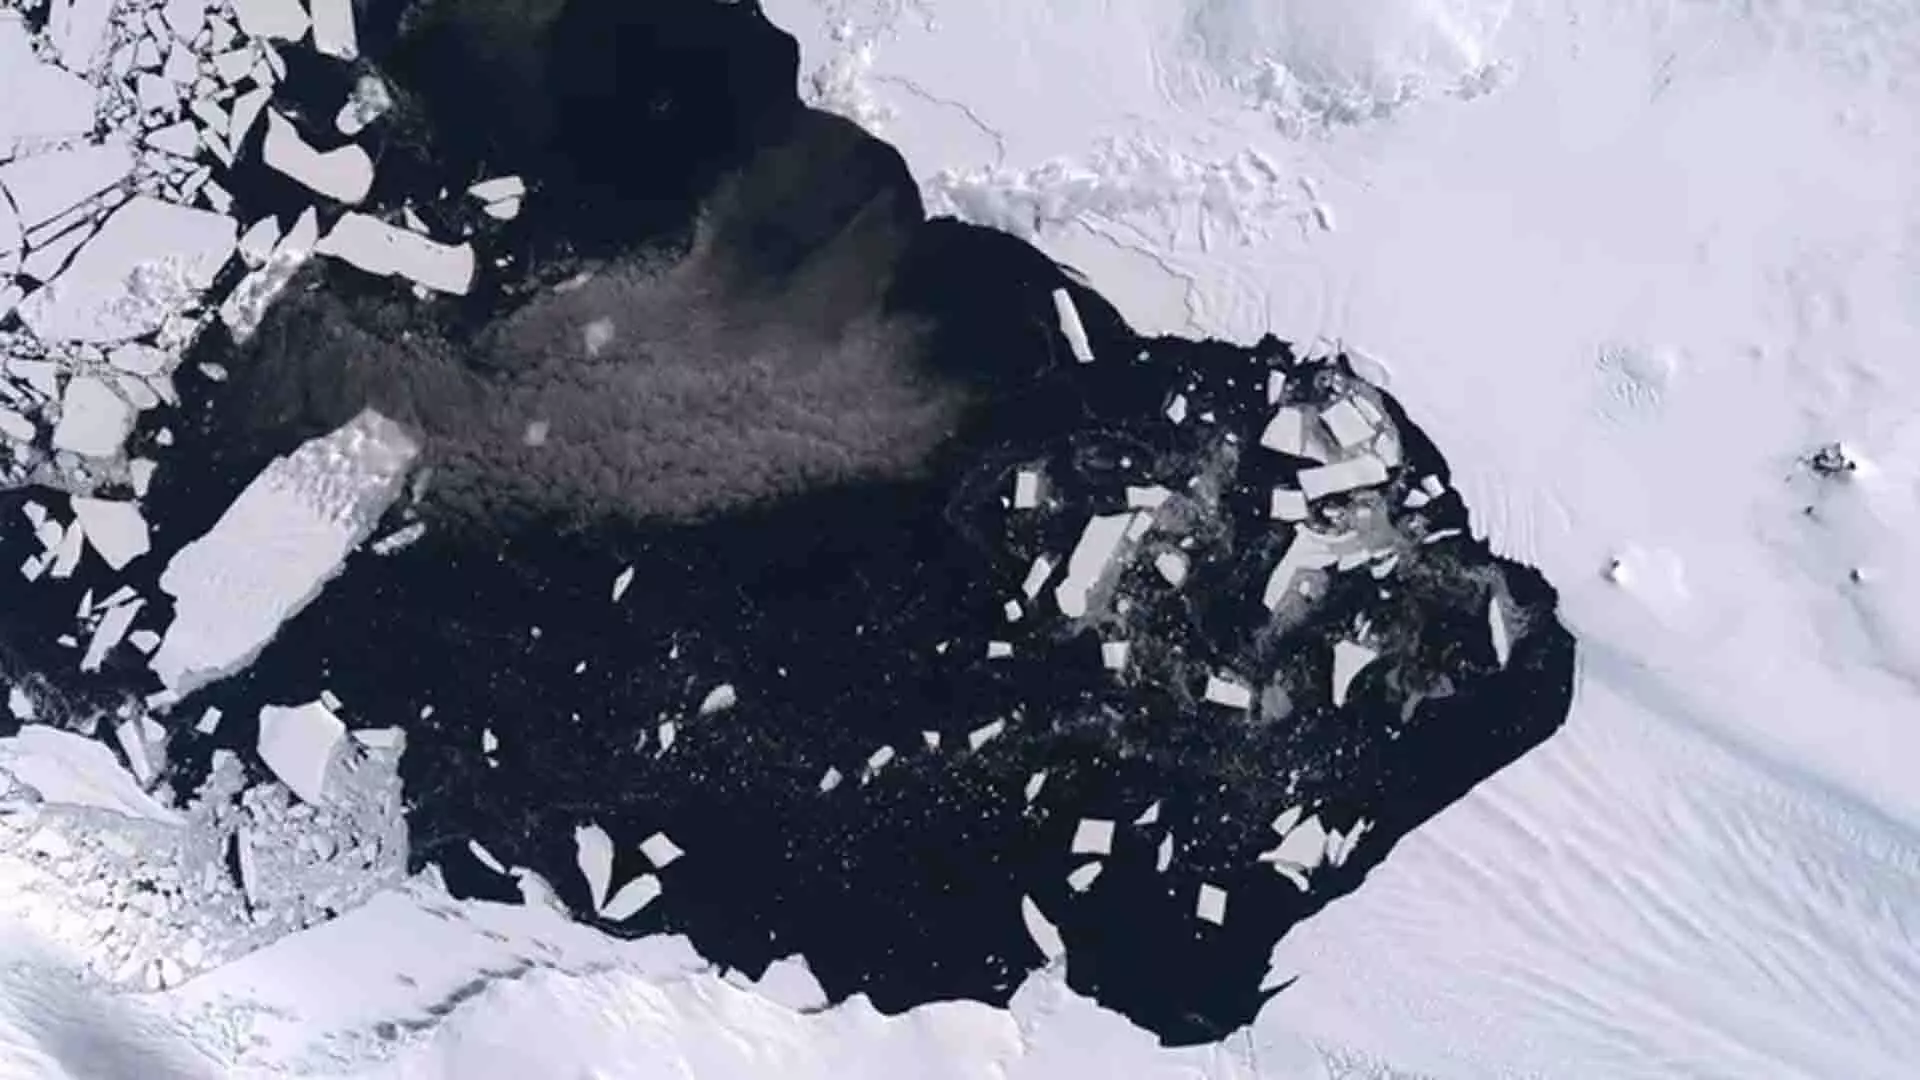 अंटार्कटिक ग्लेशियर के टूटने से 80 मील प्रति घंटे की गति का रिकॉर्ड टूटा